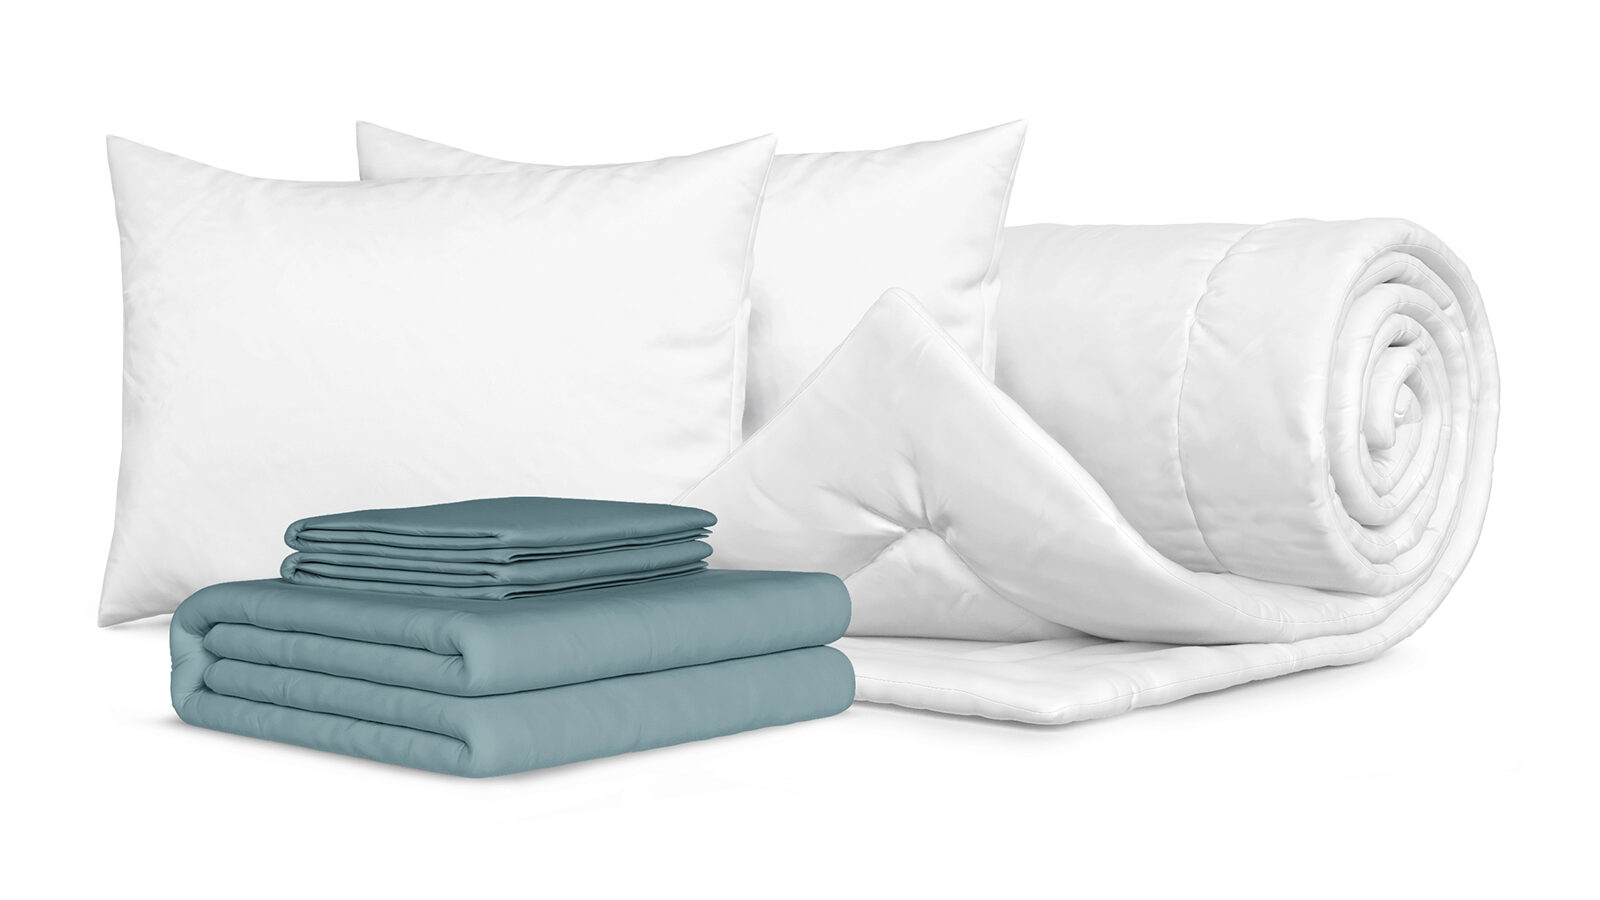 Комплект Одеяло Beat + 2 Подушка Sky + Комплект постельного белья Comfort Cotton, цвет: Серо-голубой smartsleep подушка smart comfort детская